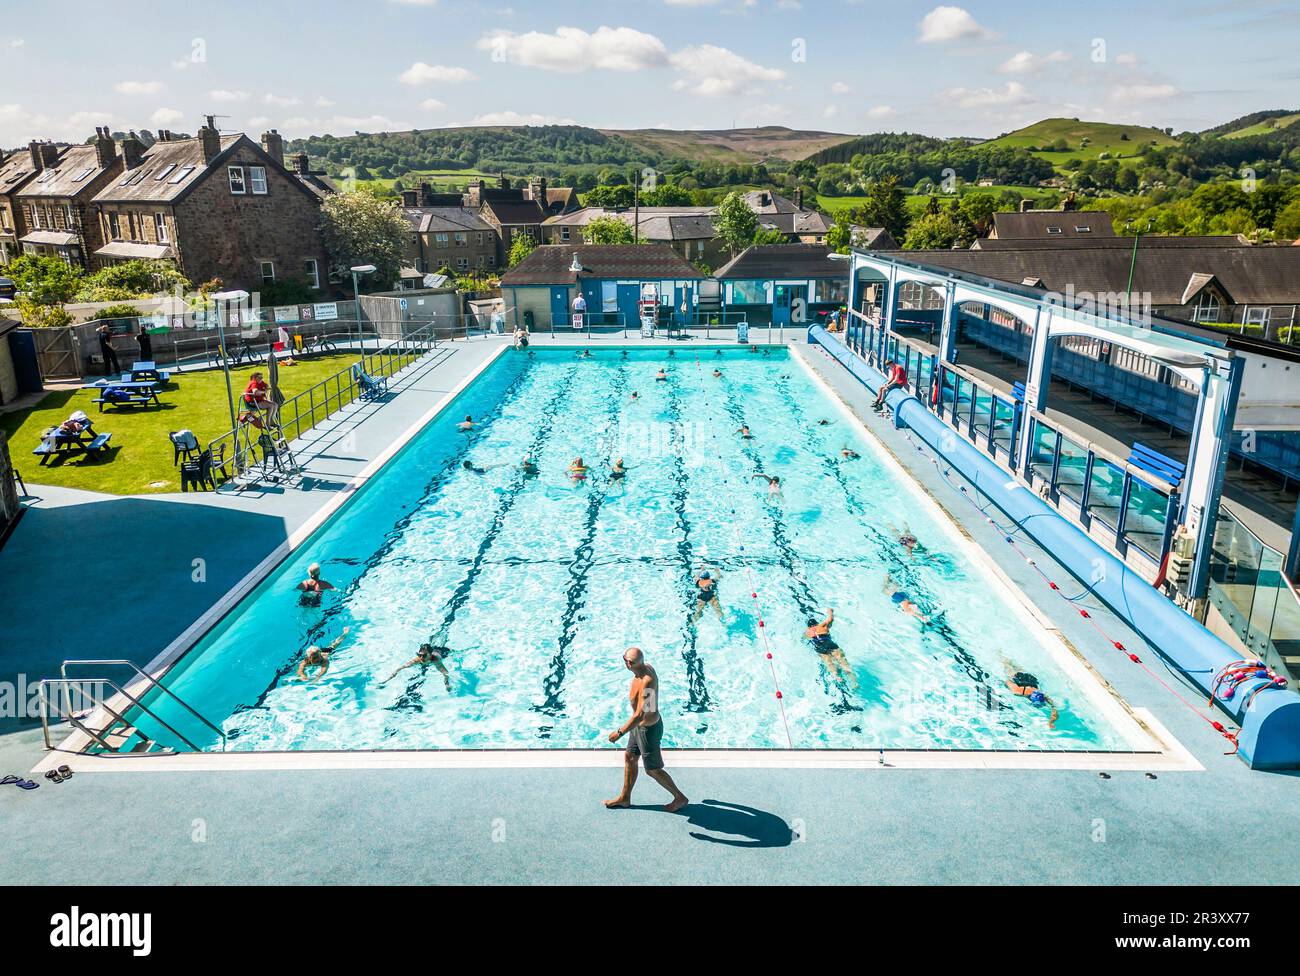 Le persone che si godono il clima caldo presso la piscina all'aperto Hathersage nel Peak District. Data immagine: Giovedì 25 maggio 2023. Foto Stock